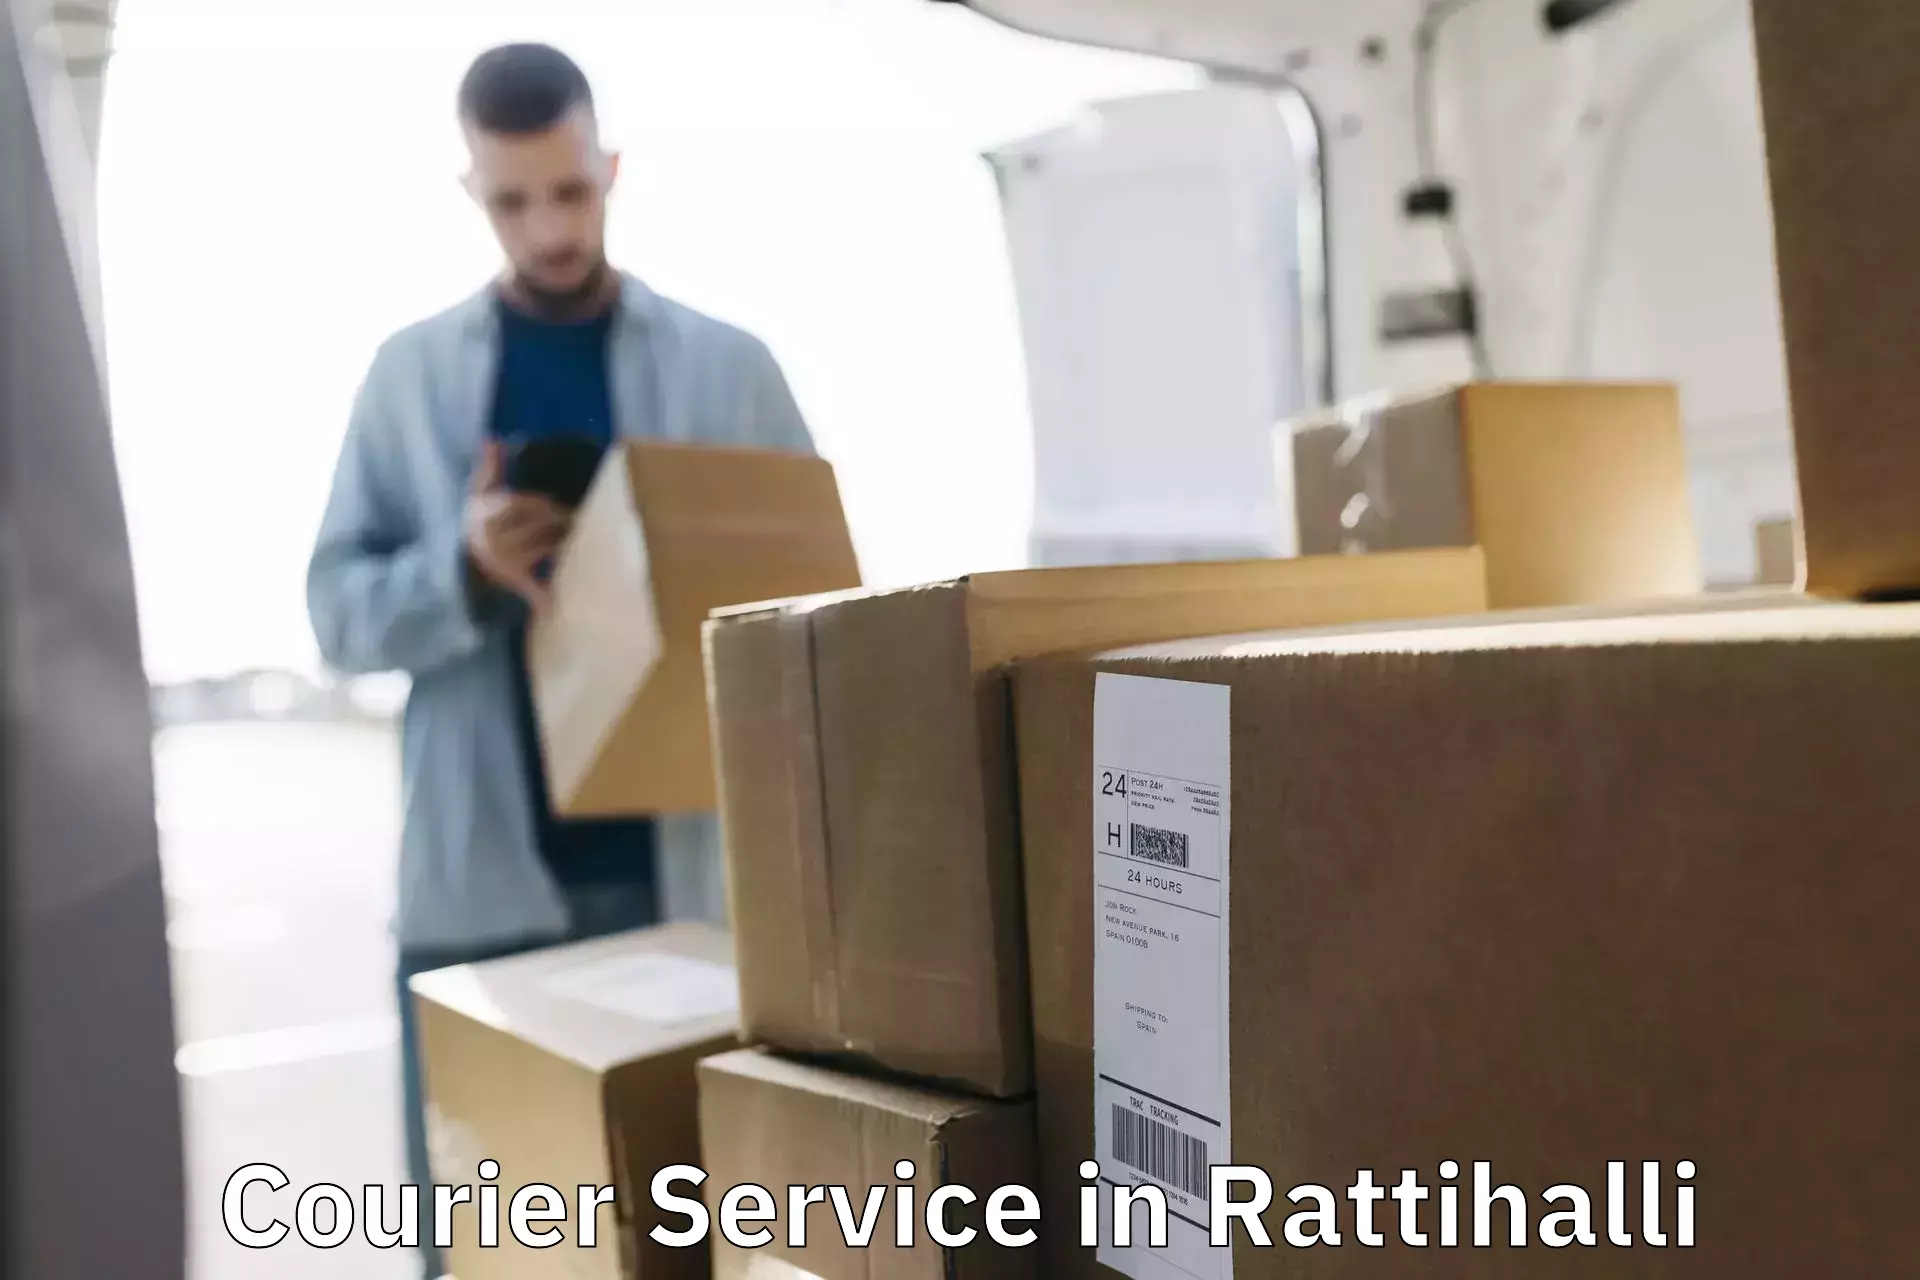 Courier service comparison in Rattihalli